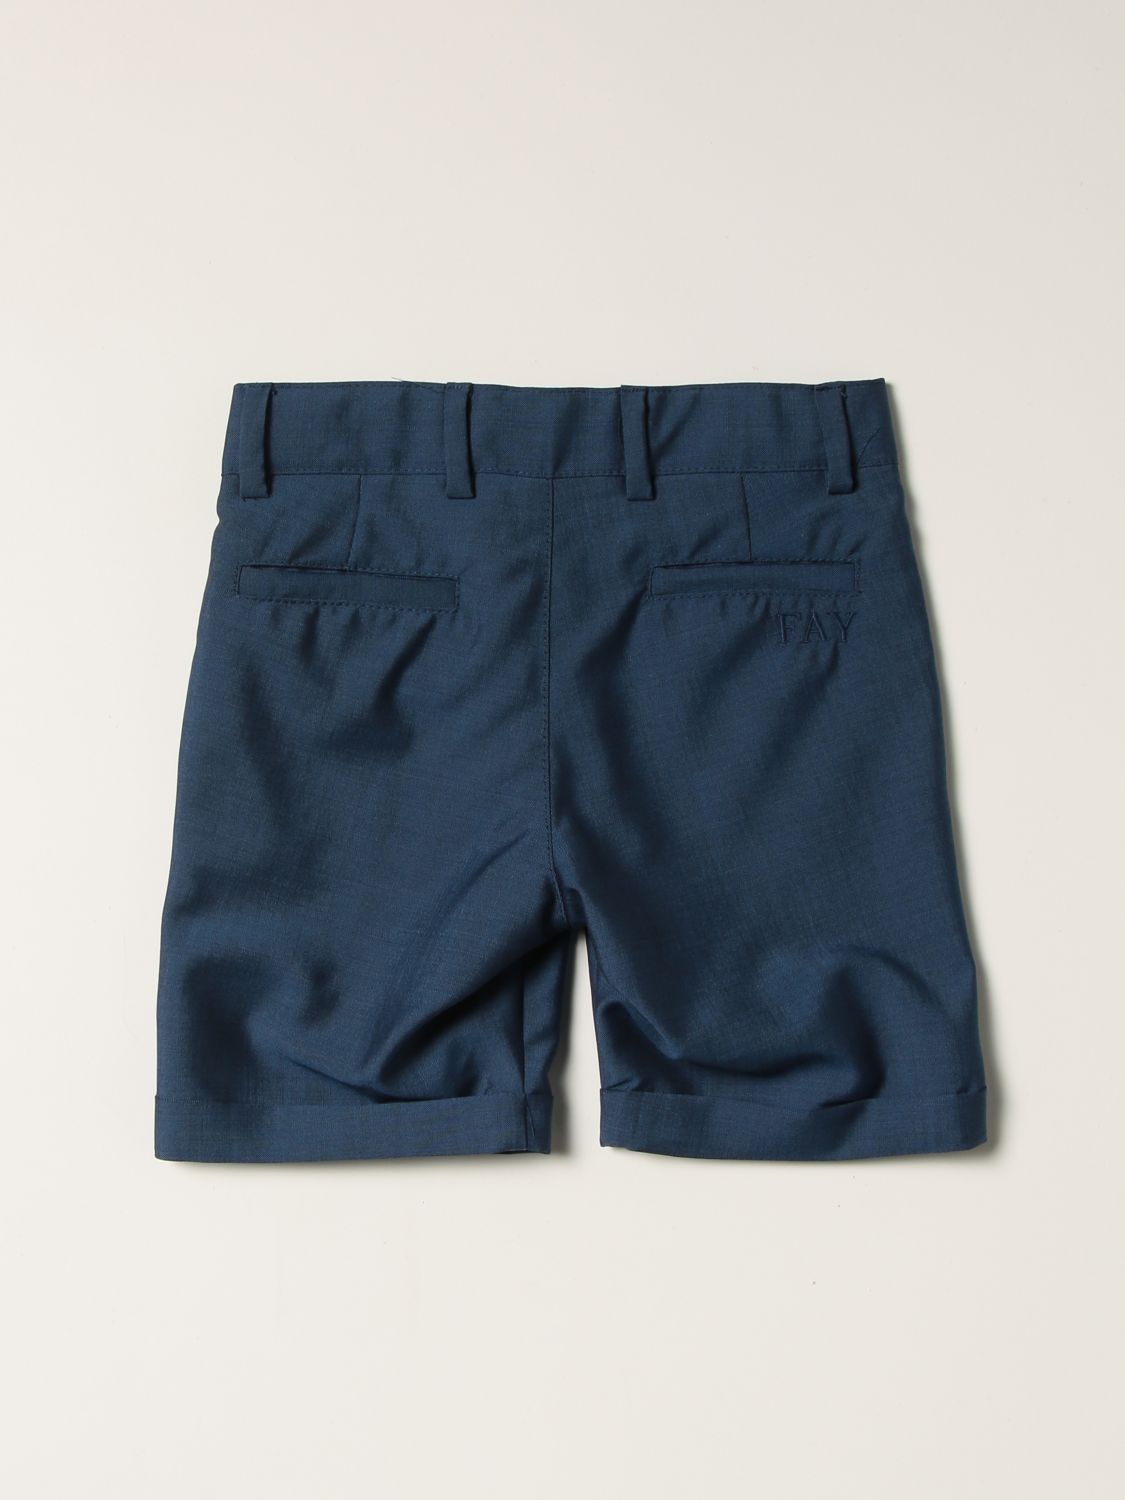 Pantaloncino Fay: Pantaloncino chino Fay in misto lana vergine blue 2